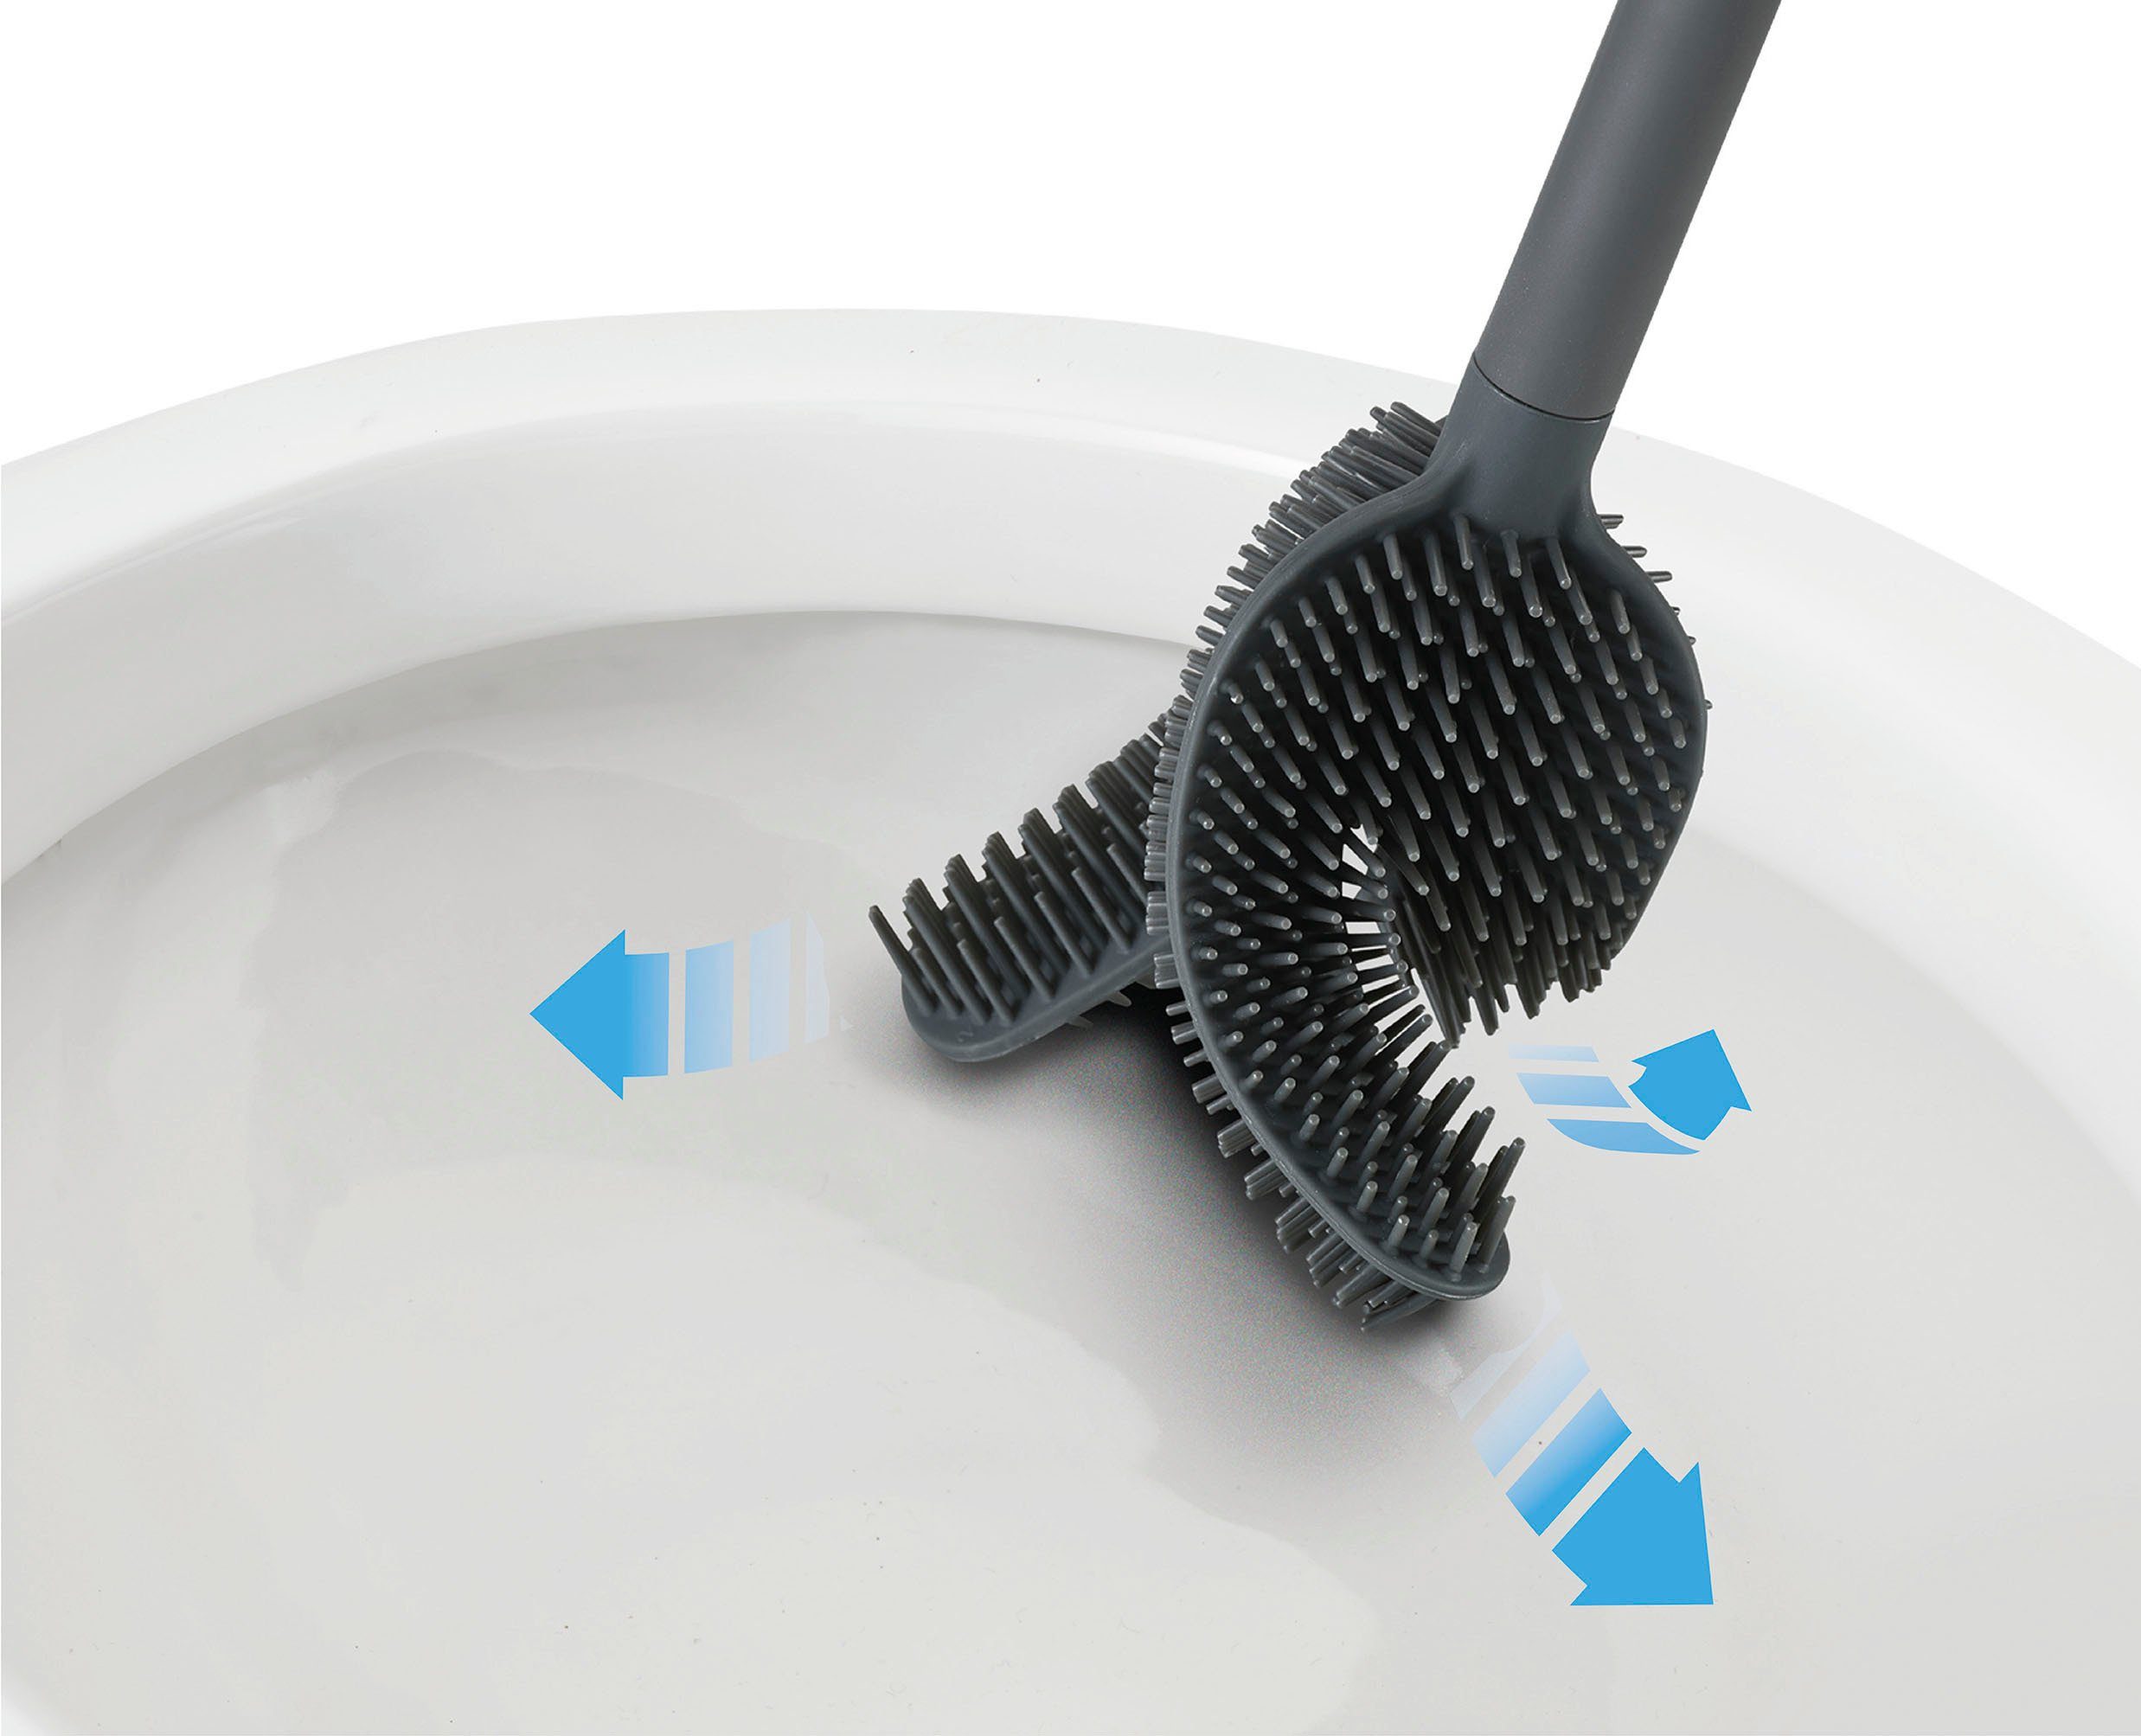 WC-Reinigungsbürste Joseph Edelstahloberfläche Flex Luxe Advanced, mit Joseph 360